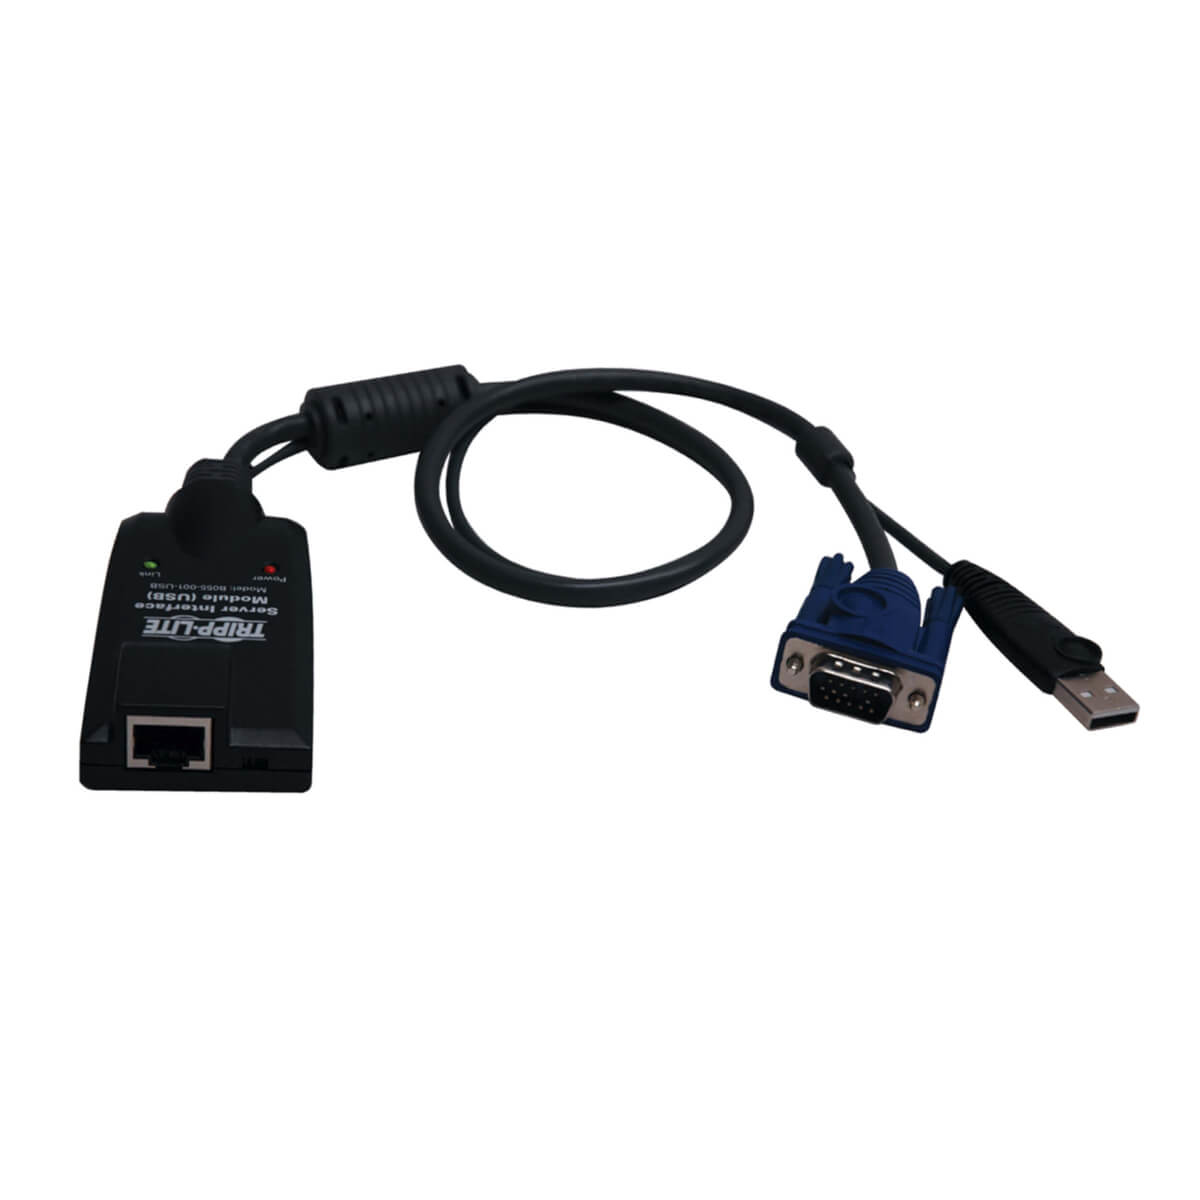 Tripp Lite B055-001-USB-V2 Accesorios para KVM - Unidad de Interfaz USB de Servidor, con Soporte para Media Virtual para KVM NetDirector Cat5 serie B064